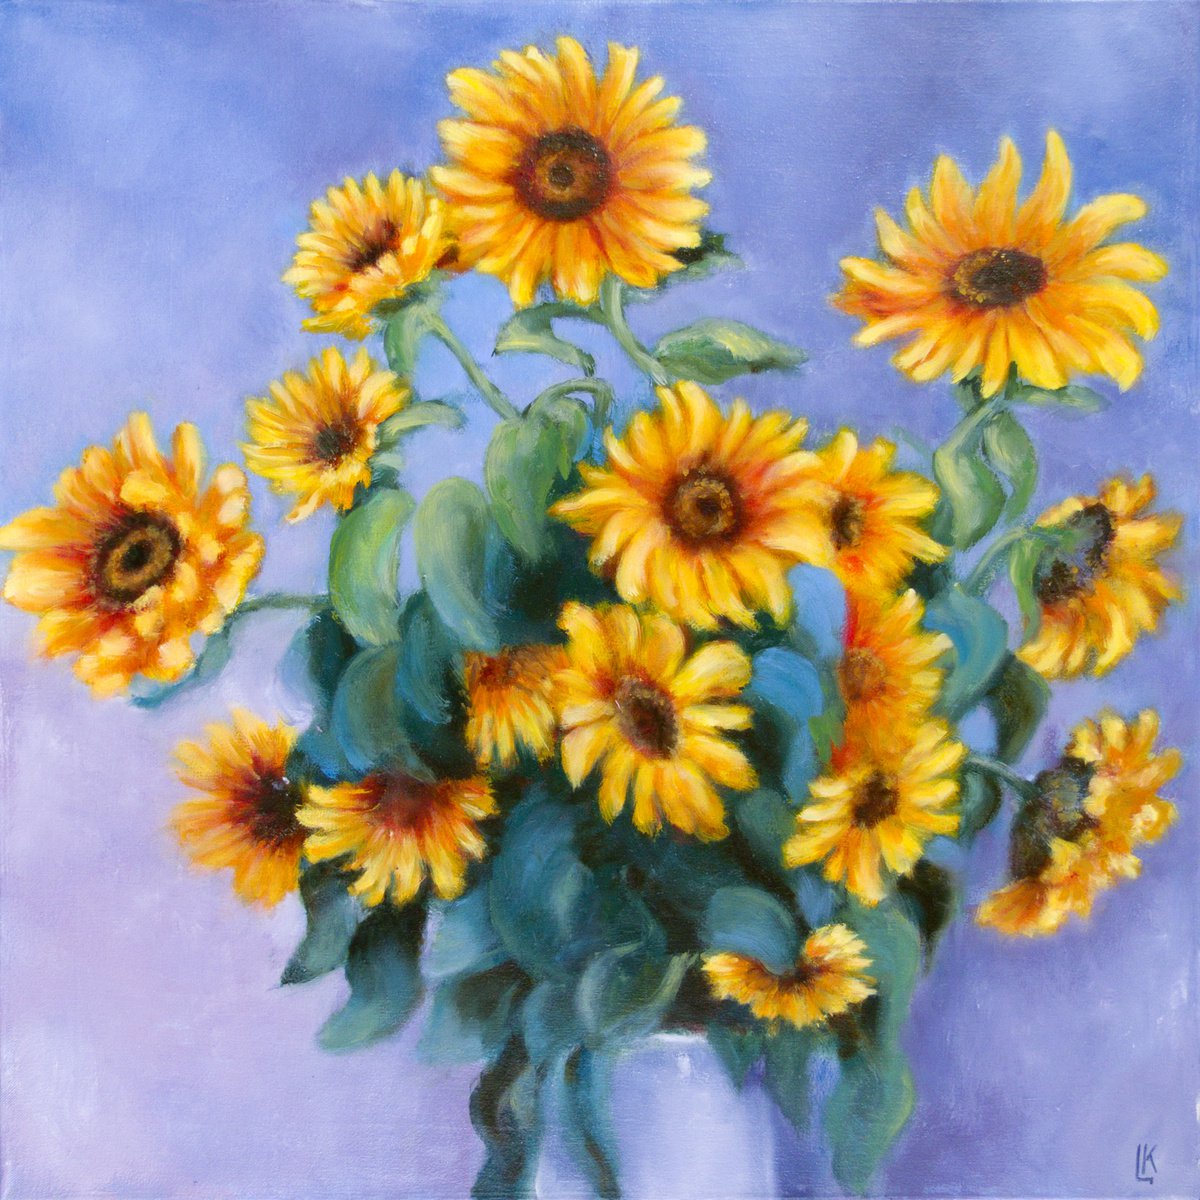 Sunflowers by Ludmila Kovalenko